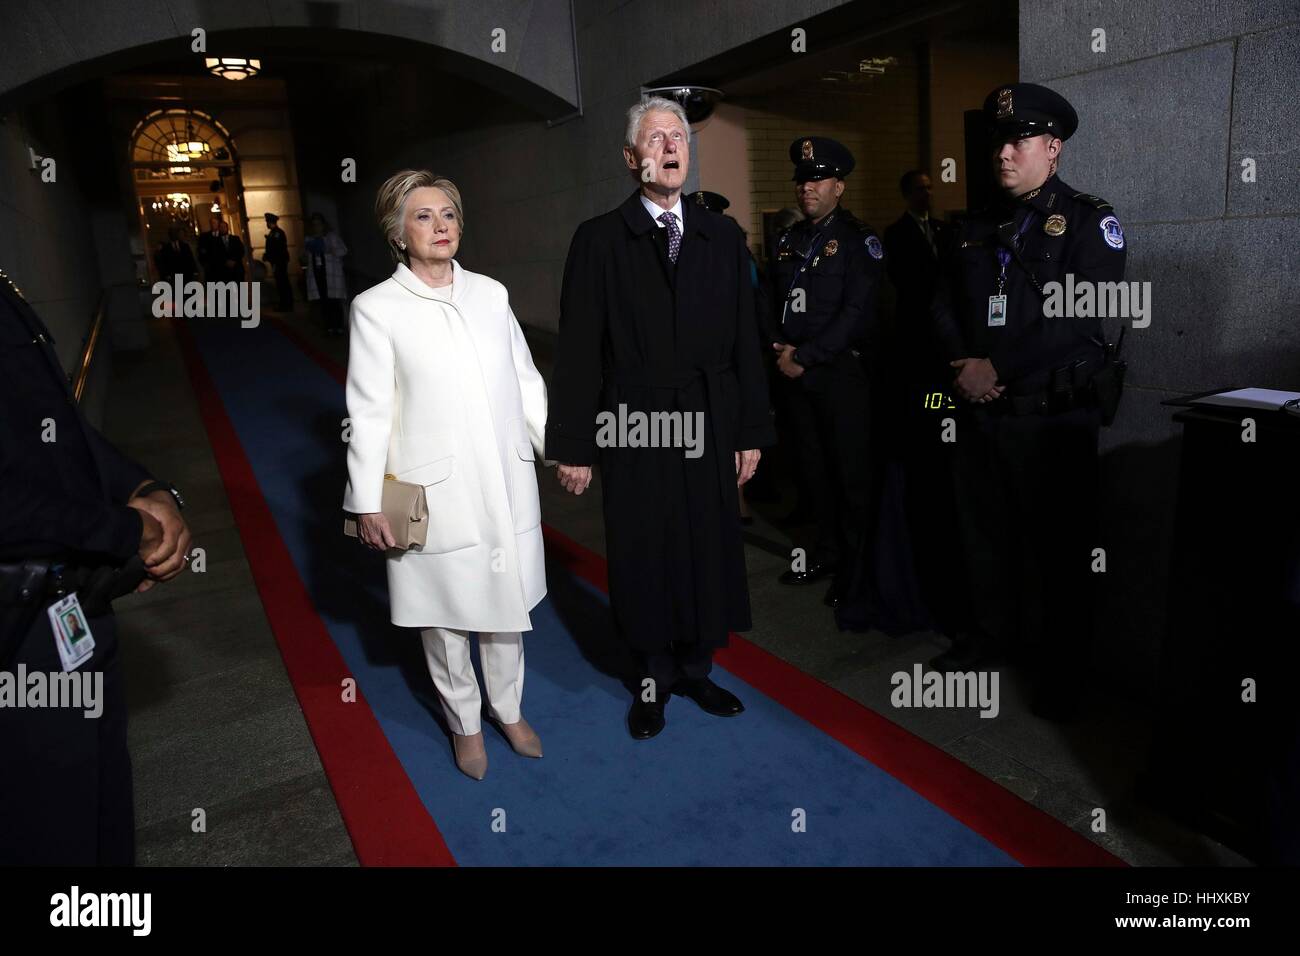 El ex senador Hillary Clinton y el ex presidente Bill Clinton lleguen al oeste del Capitolio de los Estados Unidos el viernes, 20 de enero de 2017, en Washington, durante la ceremonia de inauguración de Donald J. Trump como el 45º presidente de los Estados Unidos. (Win McNamee/Piscina foto a través de AP) Foto de stock